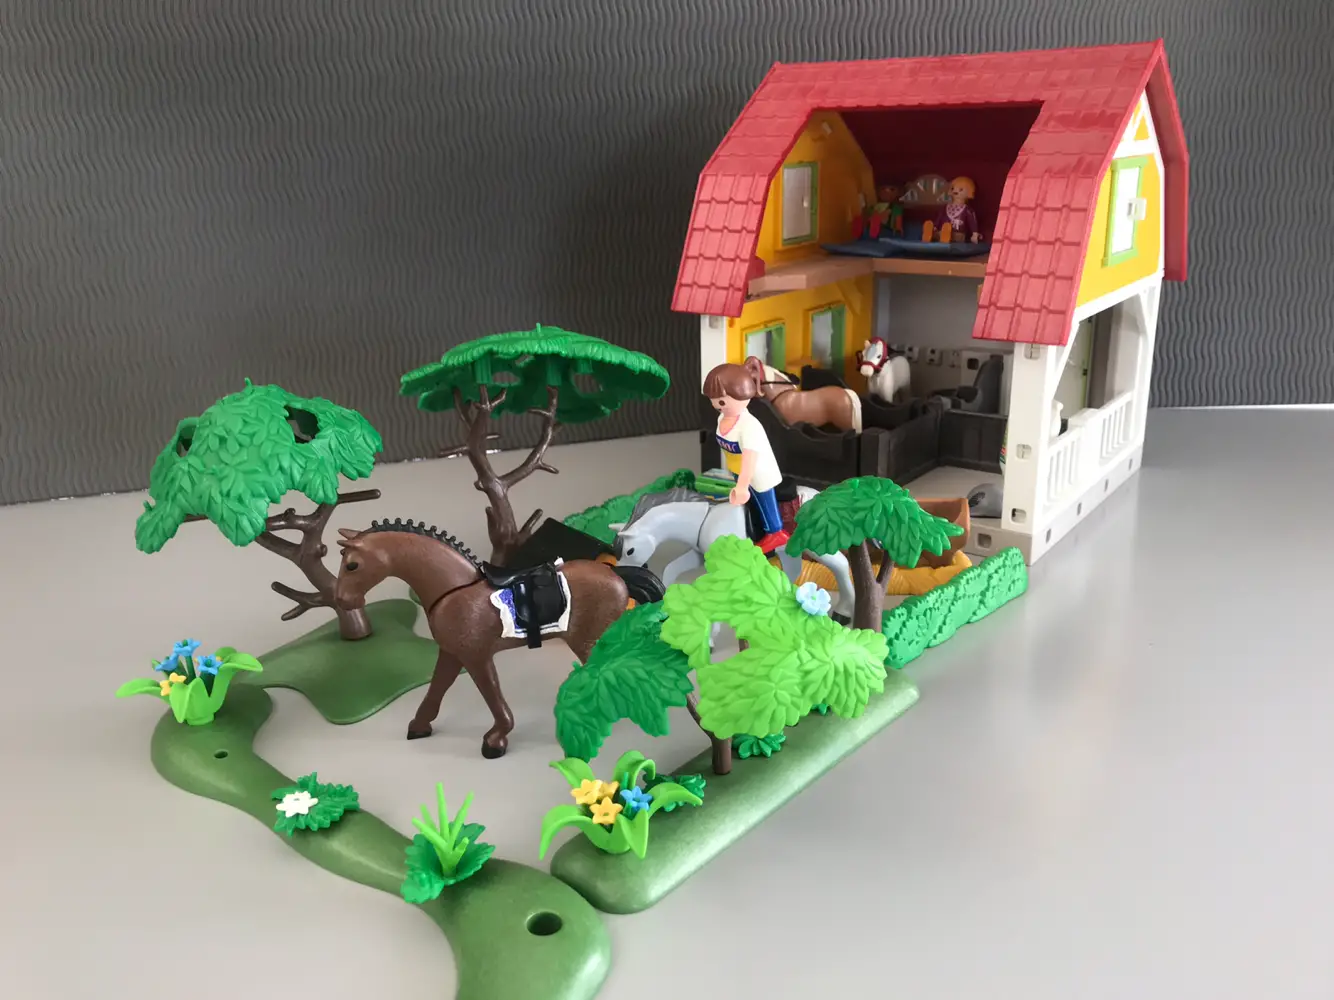 Køb Playmobil af Mette på Reshopper · Shop børn, mor og bolig